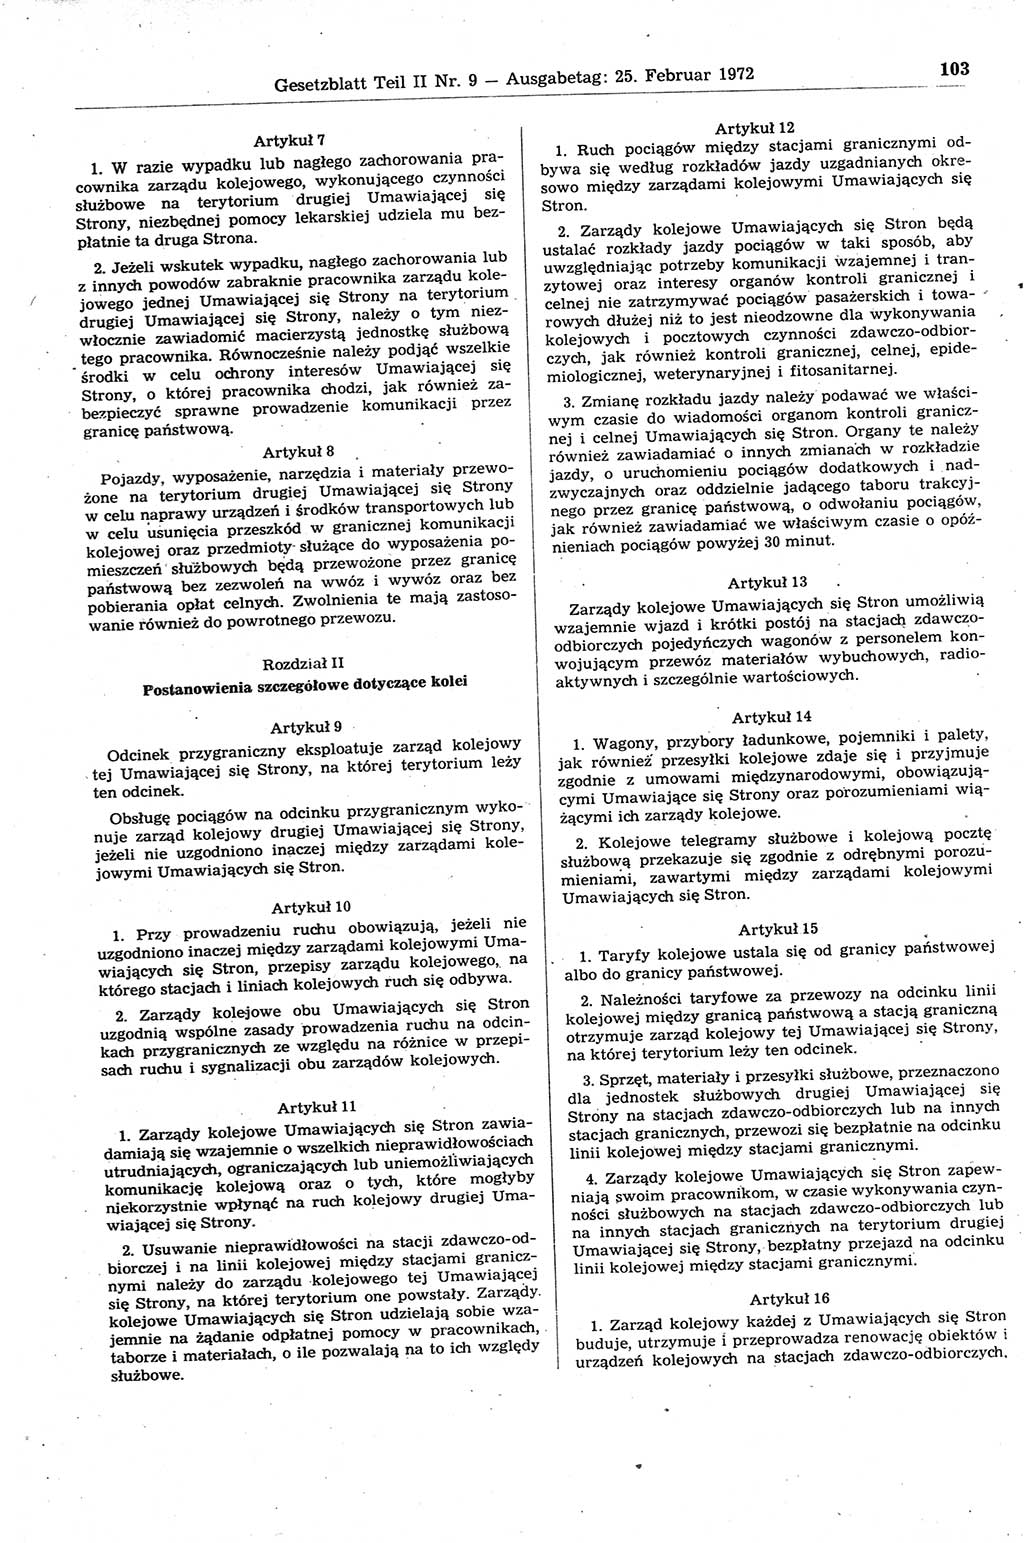 Gesetzblatt (GBl.) der Deutschen Demokratischen Republik (DDR) Teil ⅠⅠ 1972, Seite 103 (GBl. DDR ⅠⅠ 1972, S. 103)